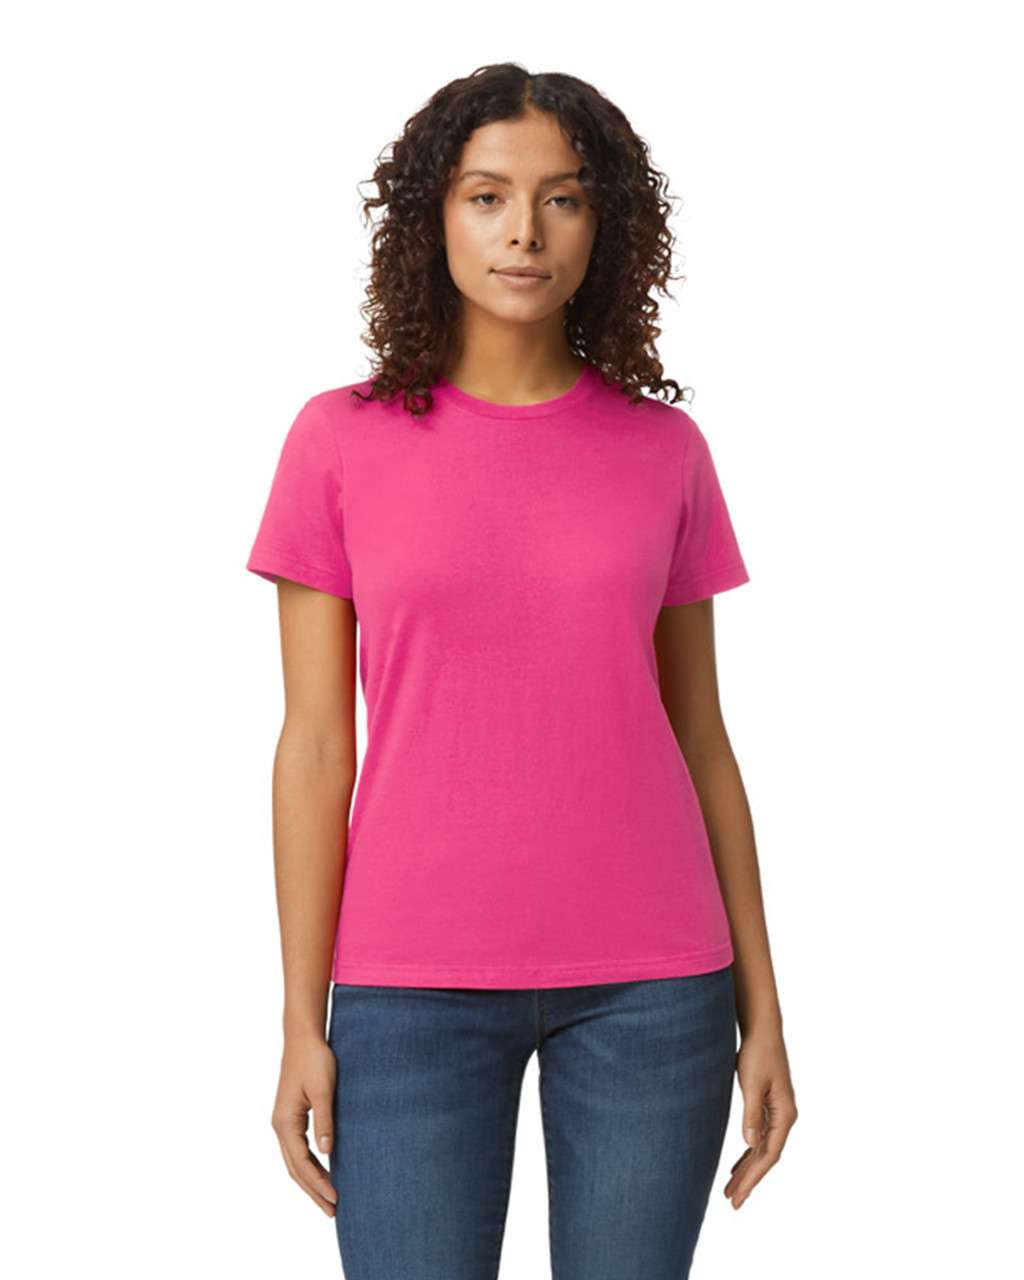 Gildan Softstyle® Midweight Women's T-shirt - růžová